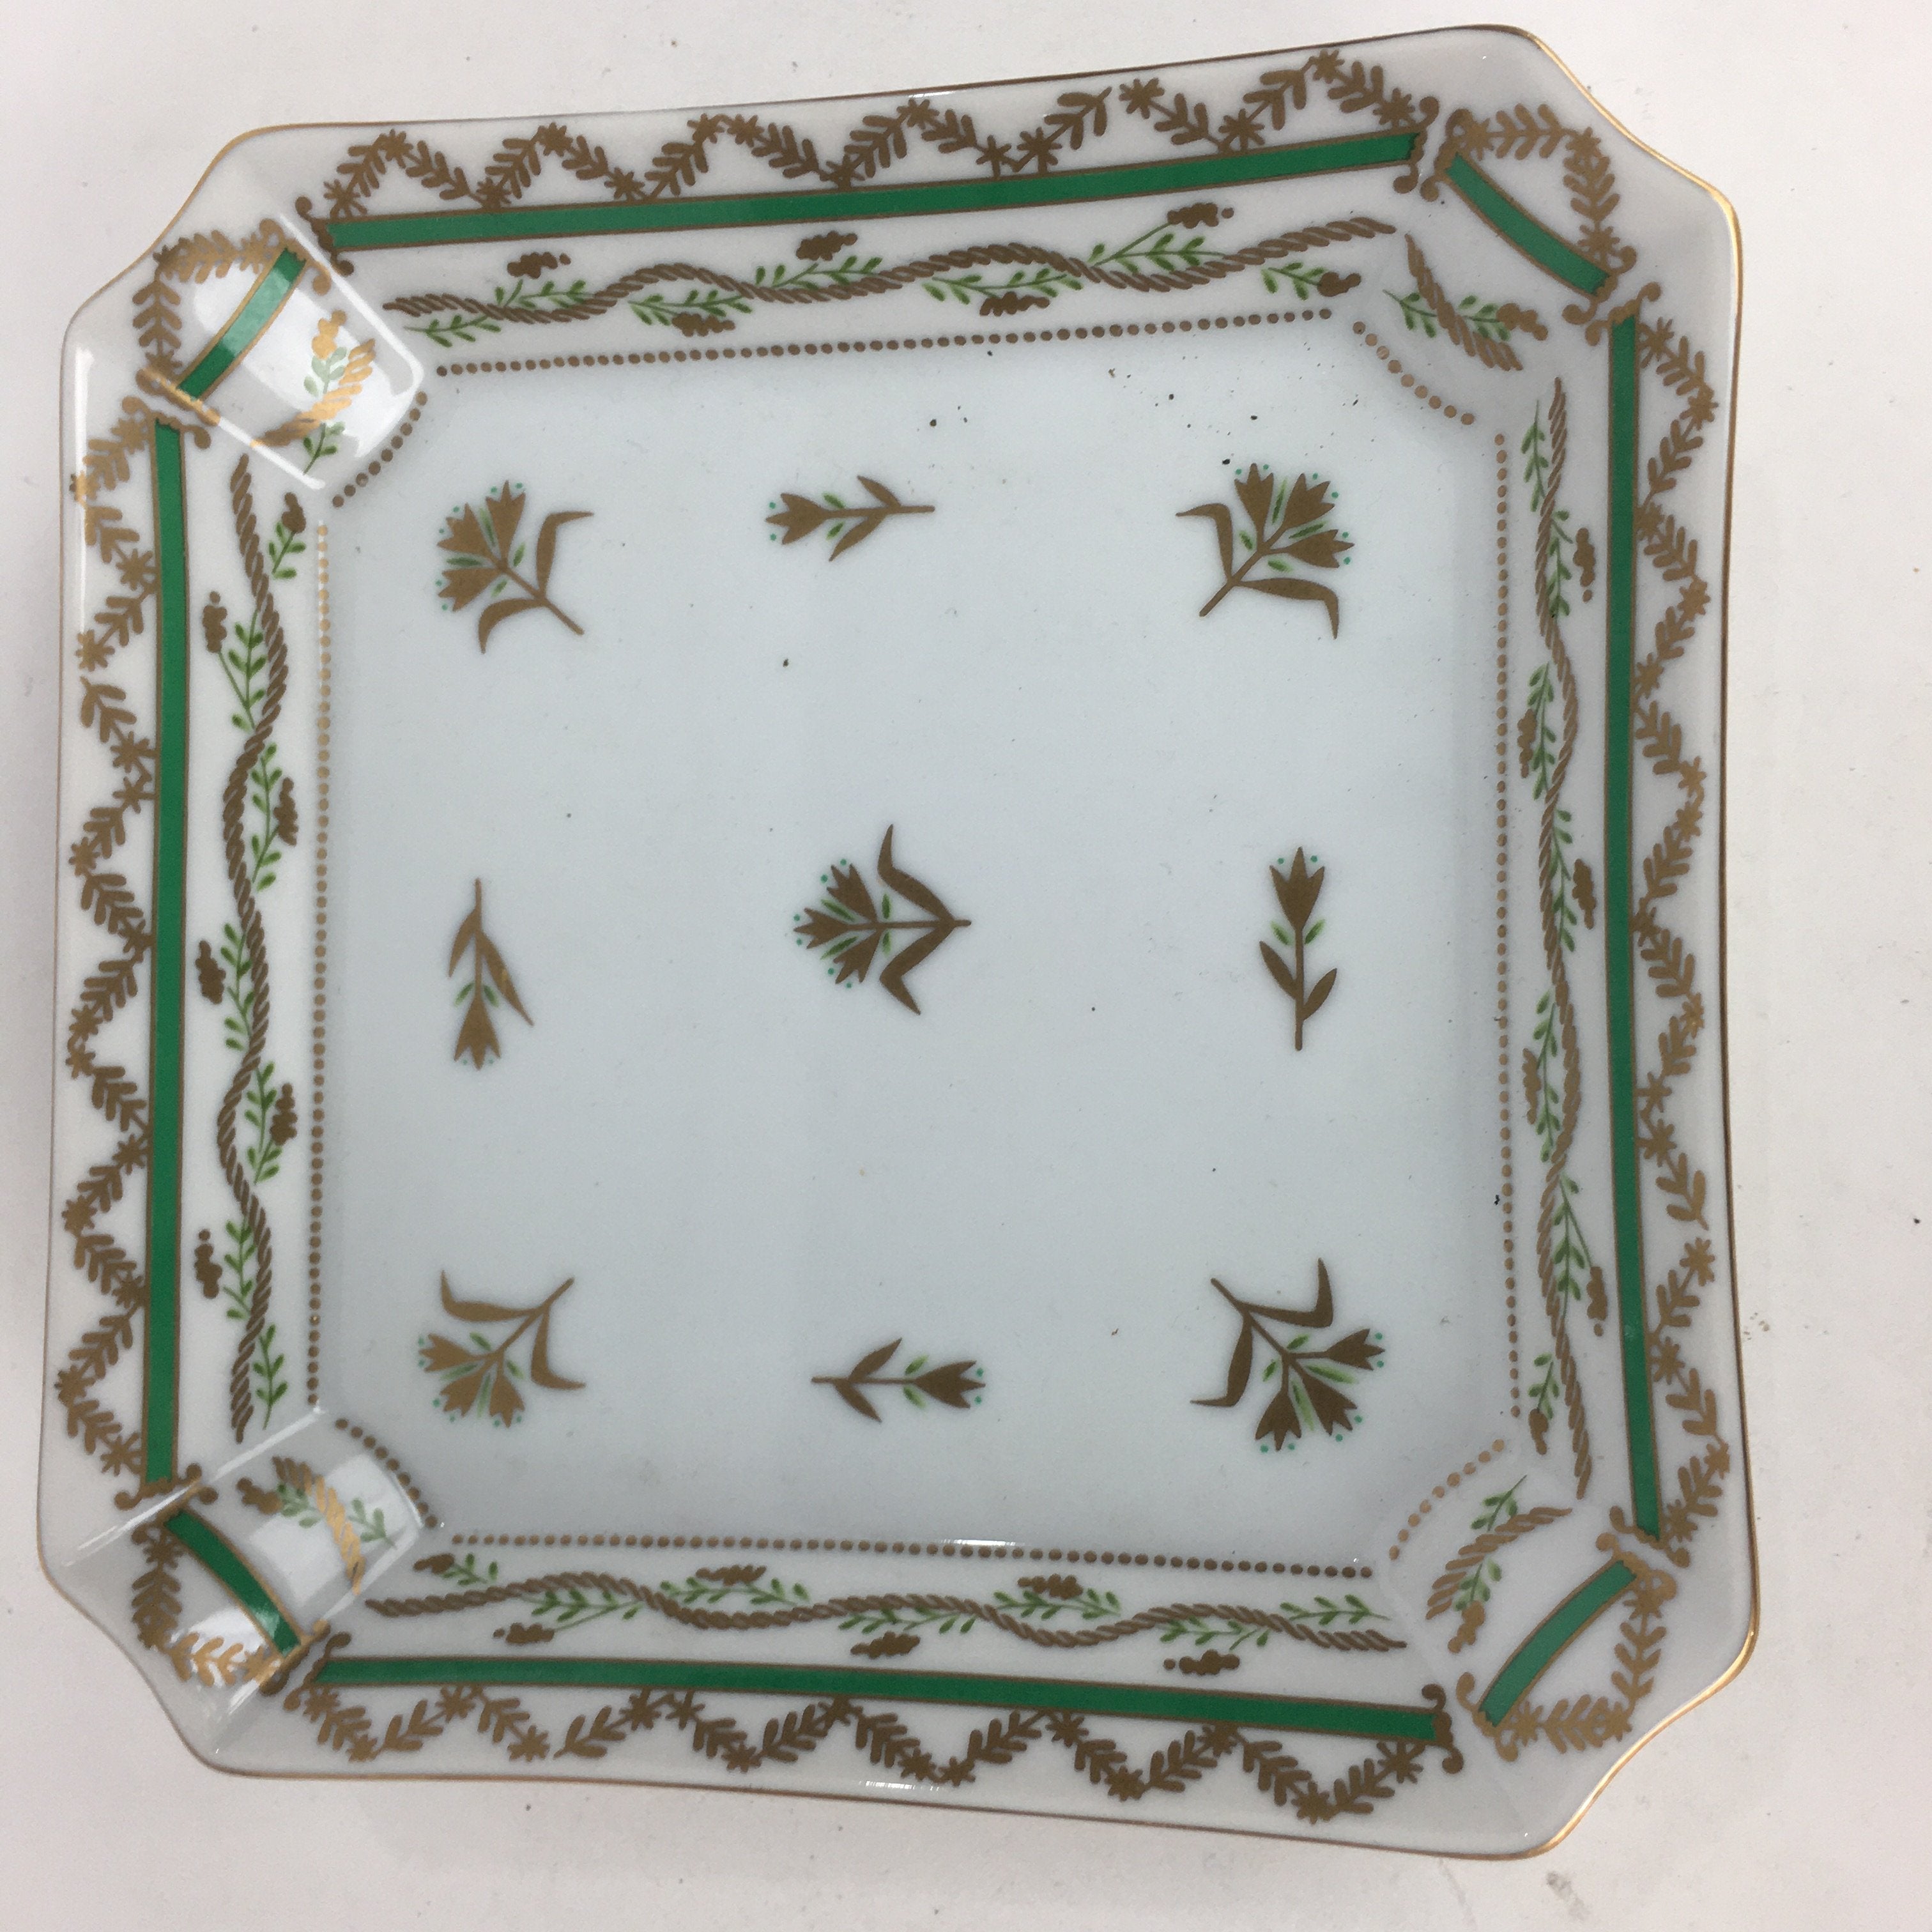 Japanese Porcelain Plate Vtg Gold Green Flower Pattern Square Shape Sara PP618